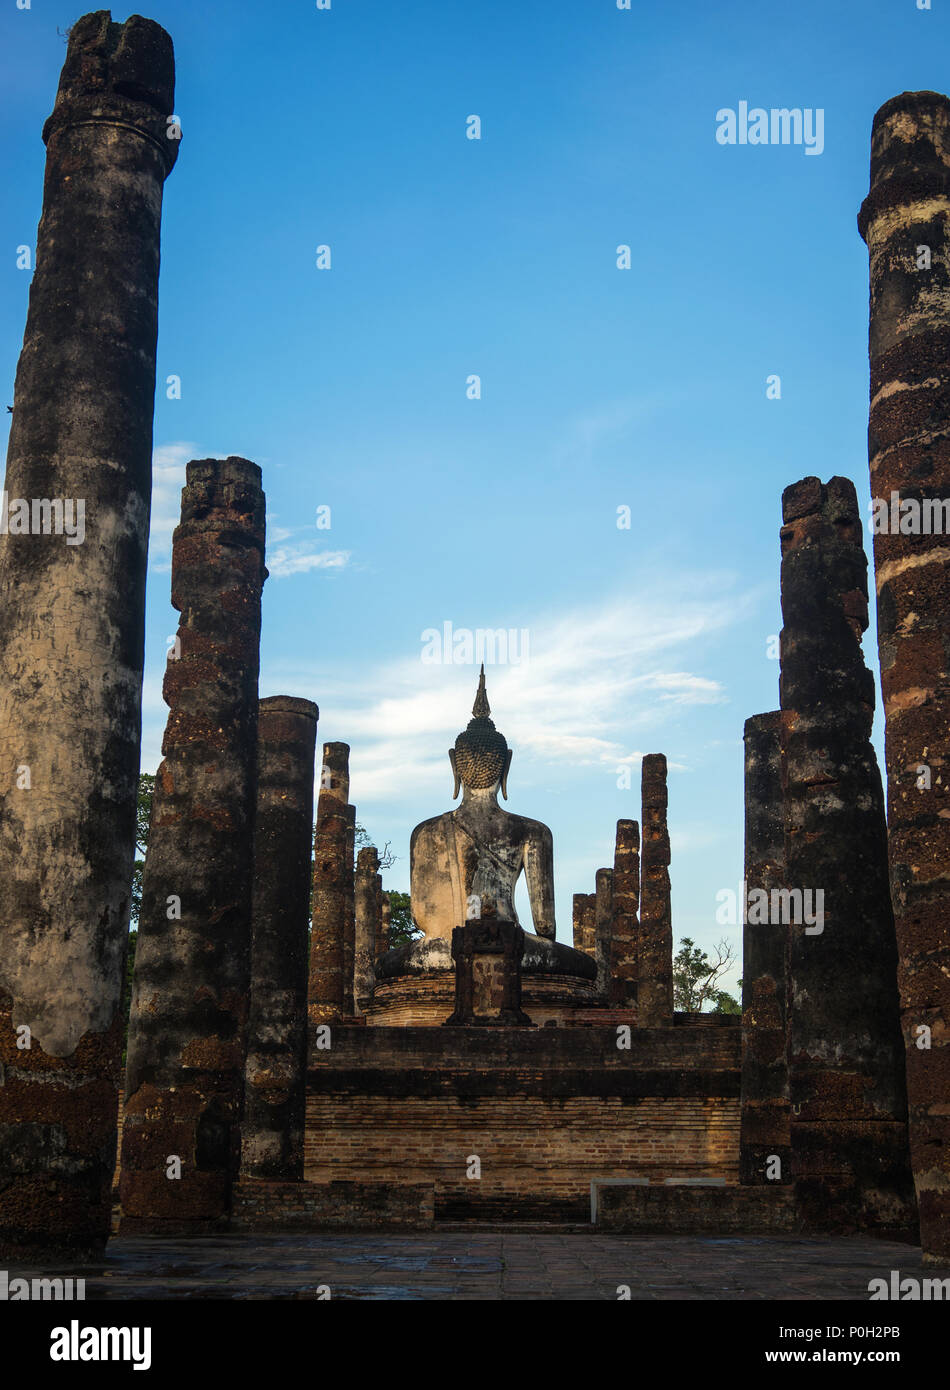 Statue de Bouddha et de colonnes dans le parc historique de Sukhothai, Thaïlande Banque D'Images